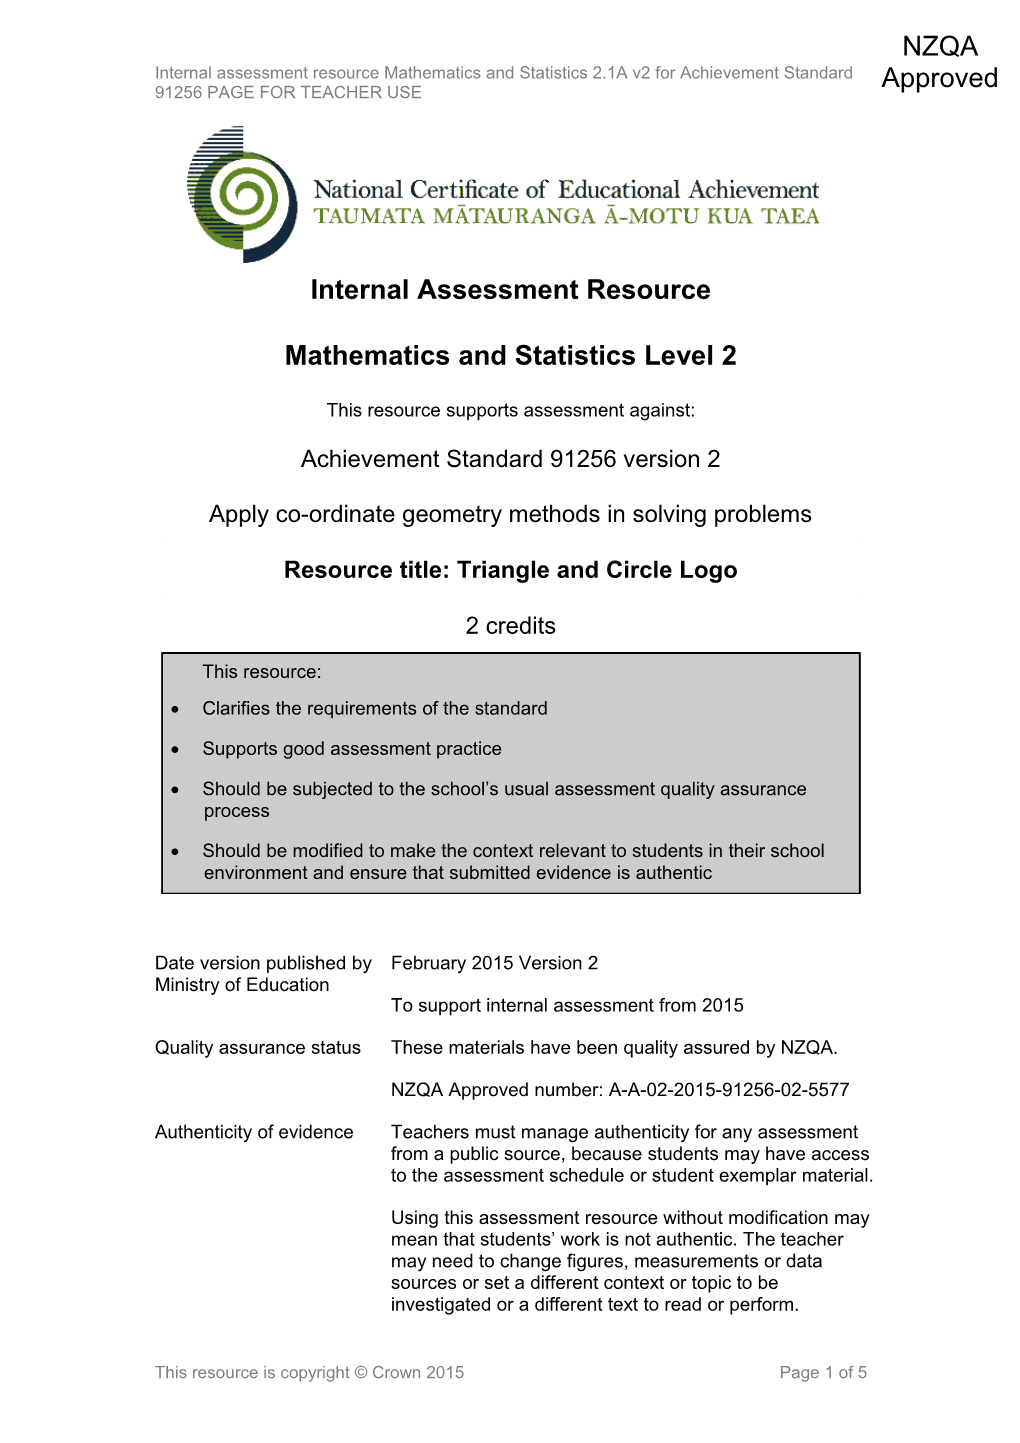 Level 2 Mathematics Internal Assessment Resource